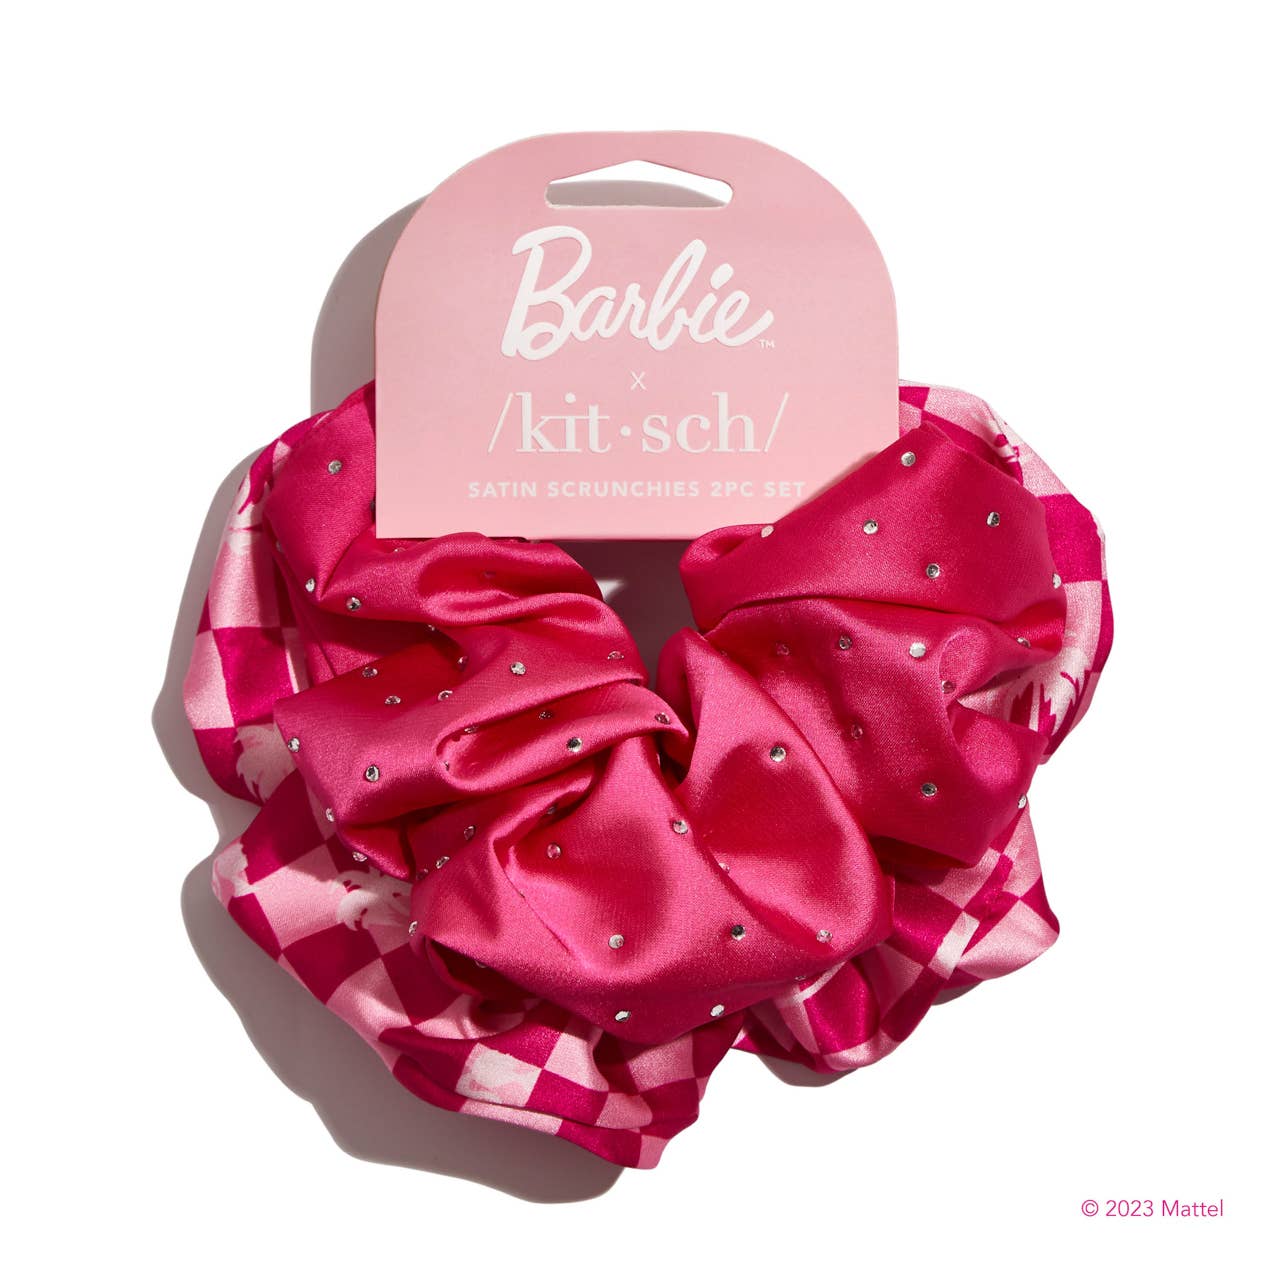 Barbie x kitsch Satin Brunch Scrunchies 2pc Set